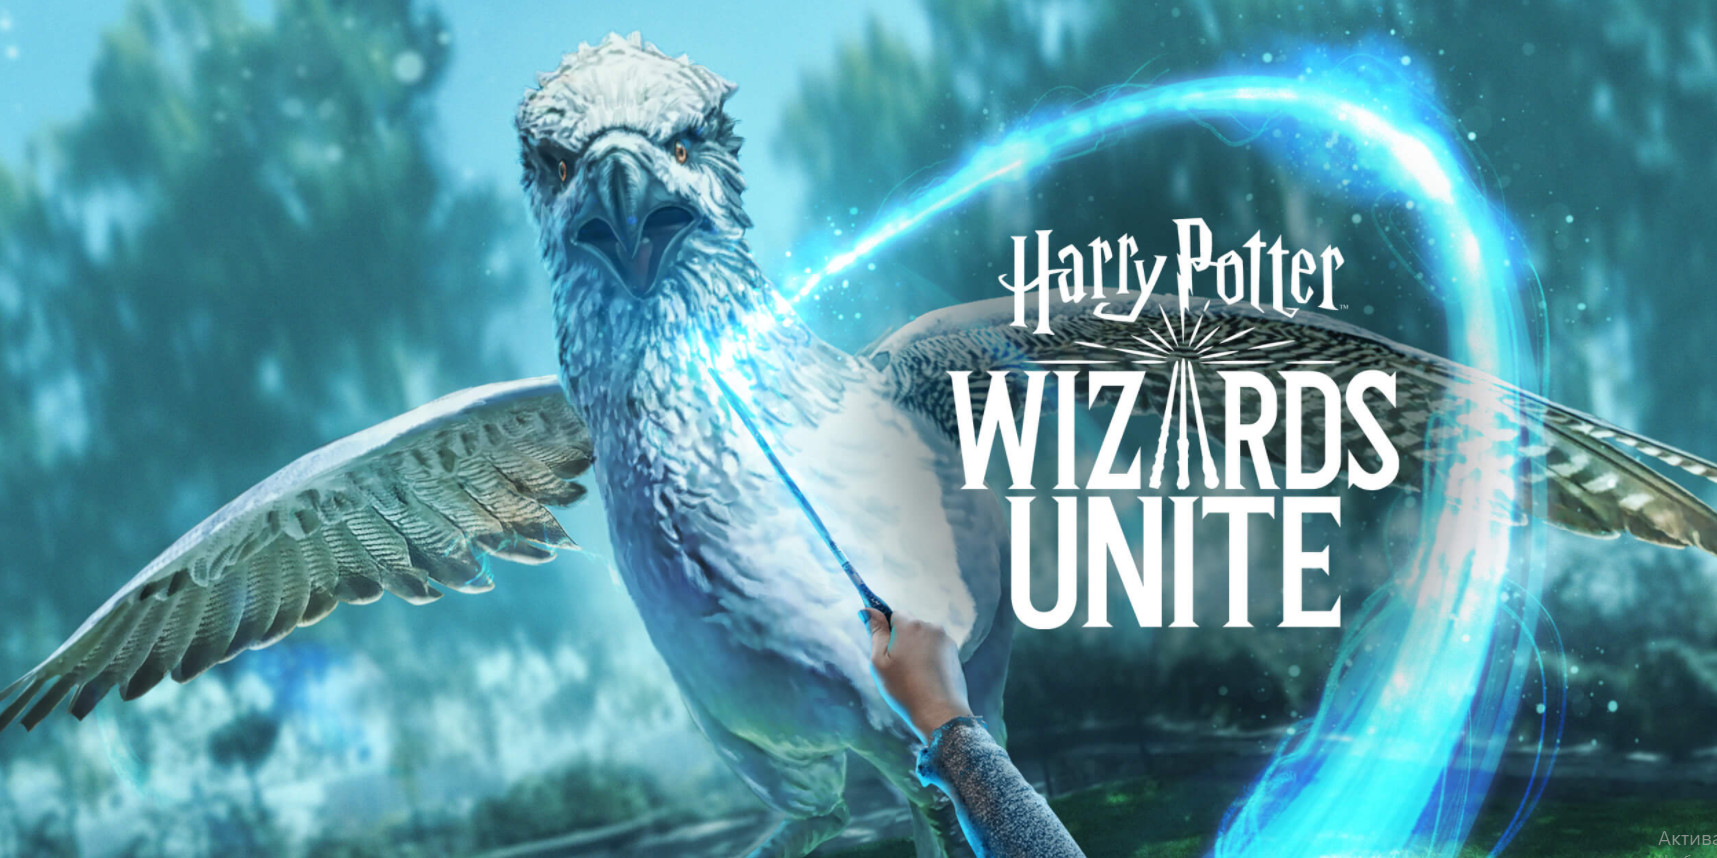 Гарри Поттер: Wizards Unite - обновление игры для мобильных устройств